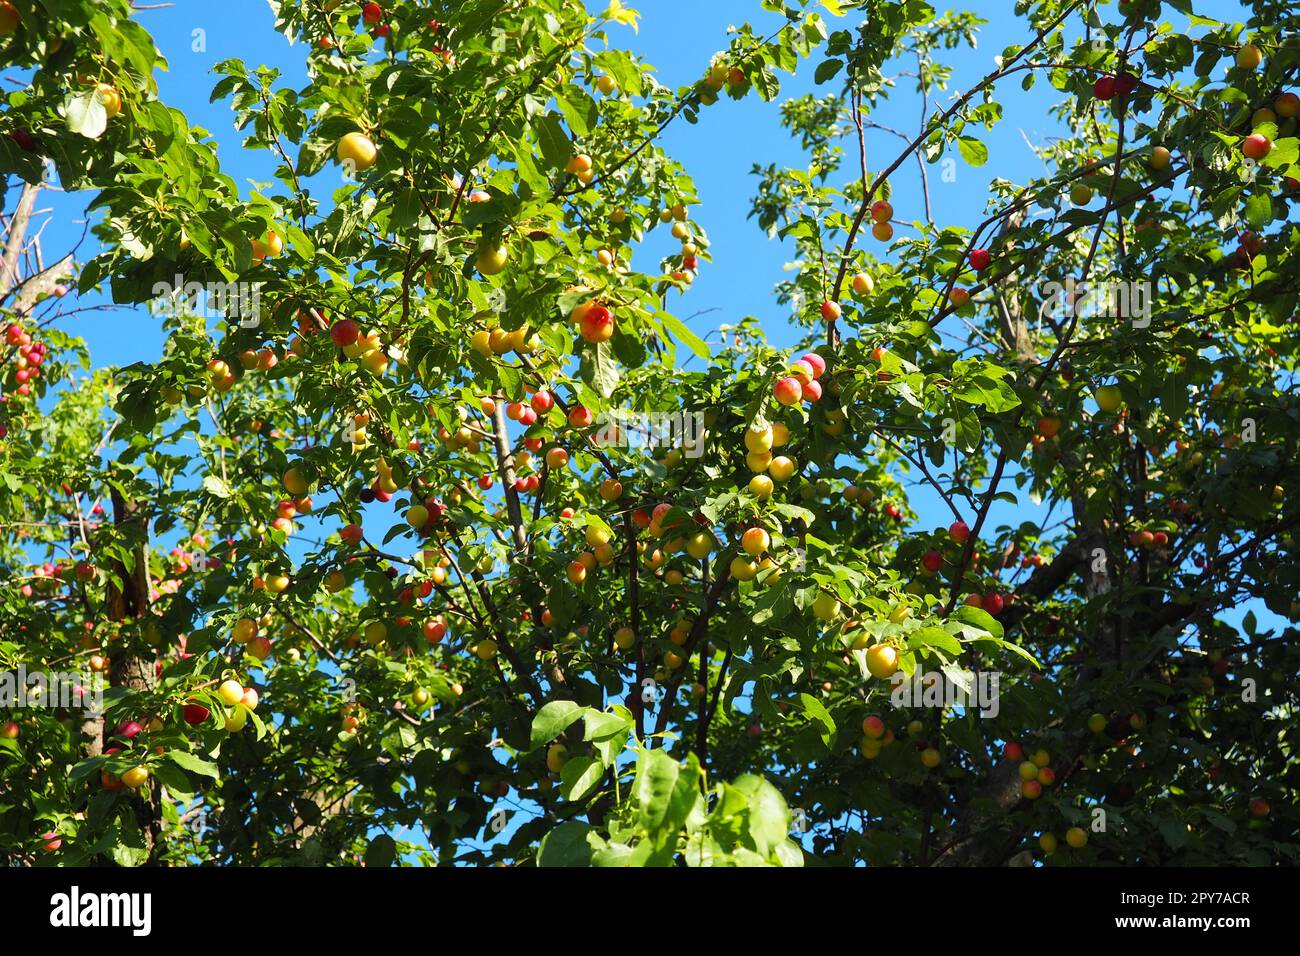 Prunus cerasifera è una specie di prugna conosciuta con i nomi comuni di prugna di ciliegio e prugna di mirobalano. albero ornamentale per giardini e giardini. Frutti di prugna gialli e rossi sui rami Foto Stock